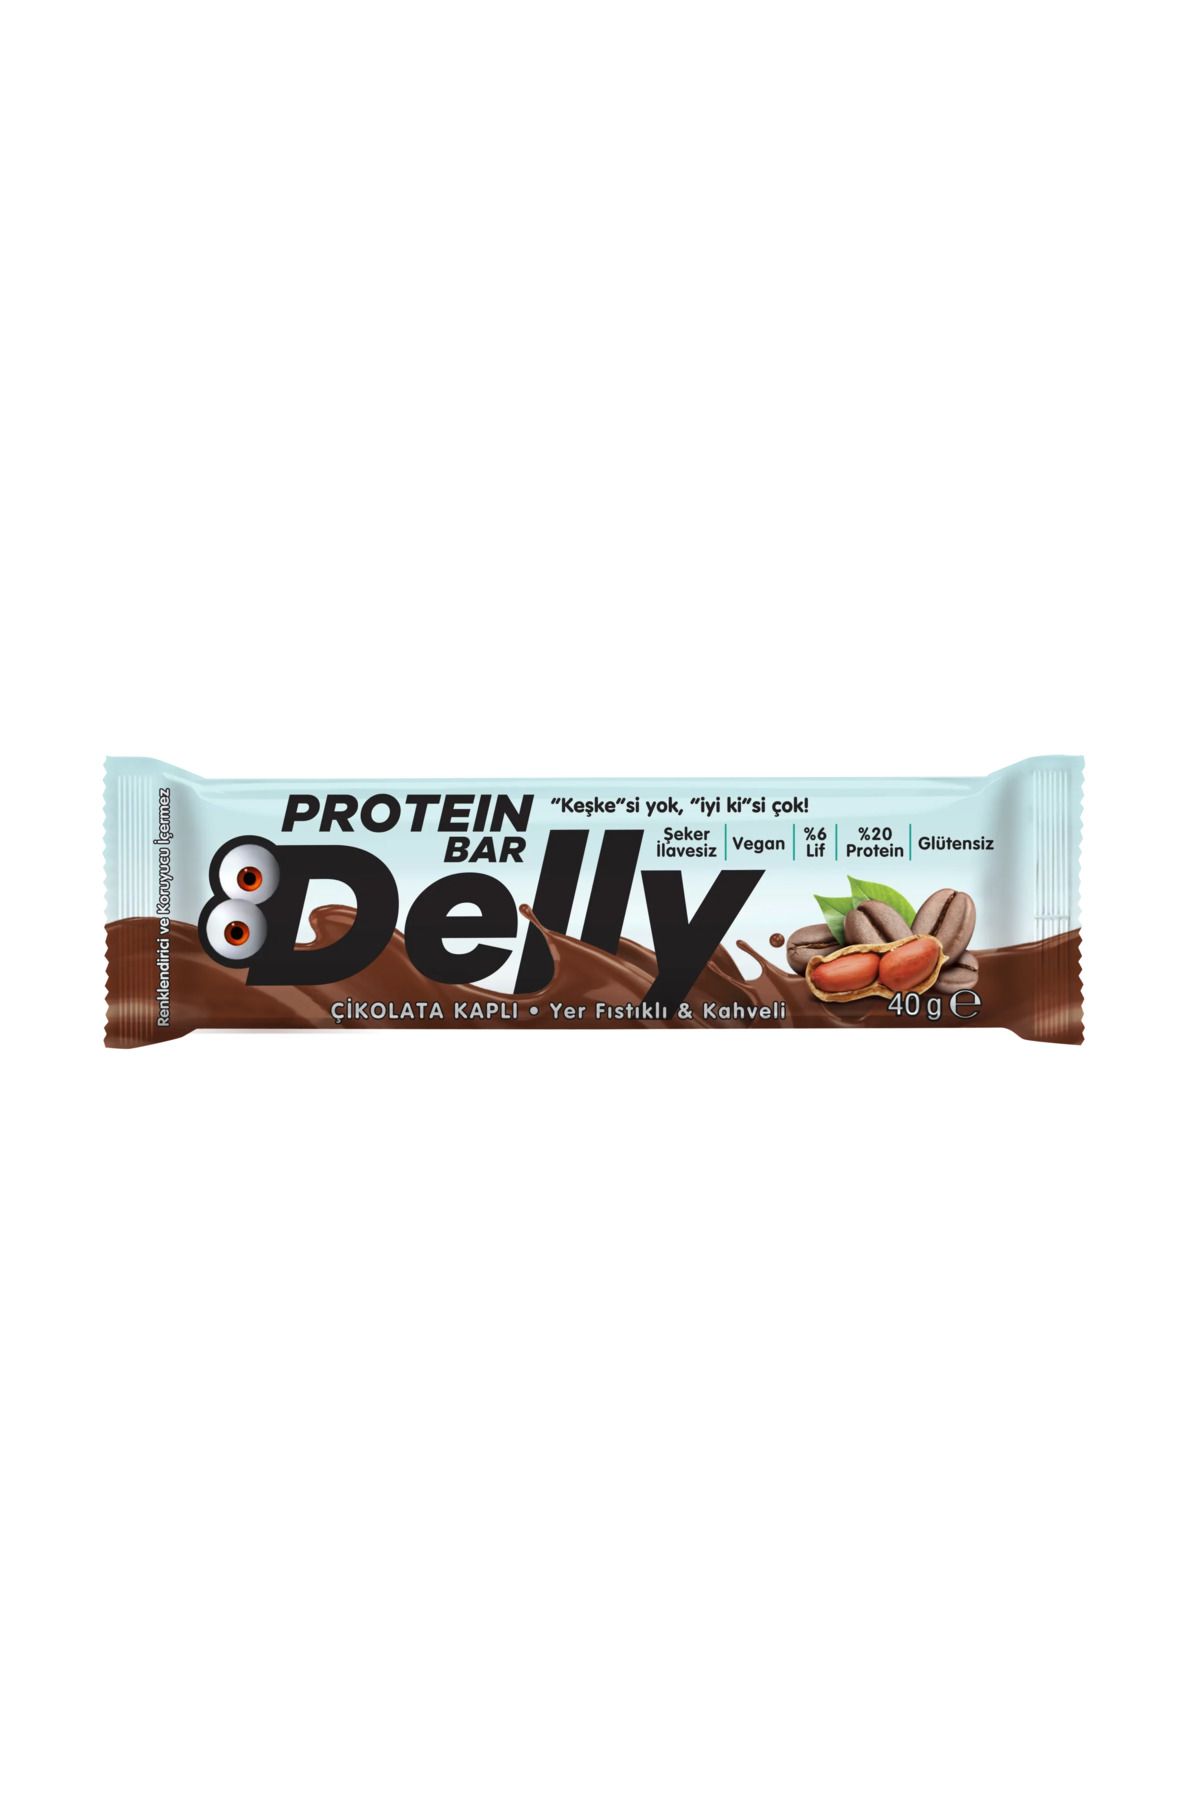 Delly Şeker Ilavesiz Çikolata Kaplı - Yer Fıstıklı & Kahveli Protein Bar 40g (12 ADET)